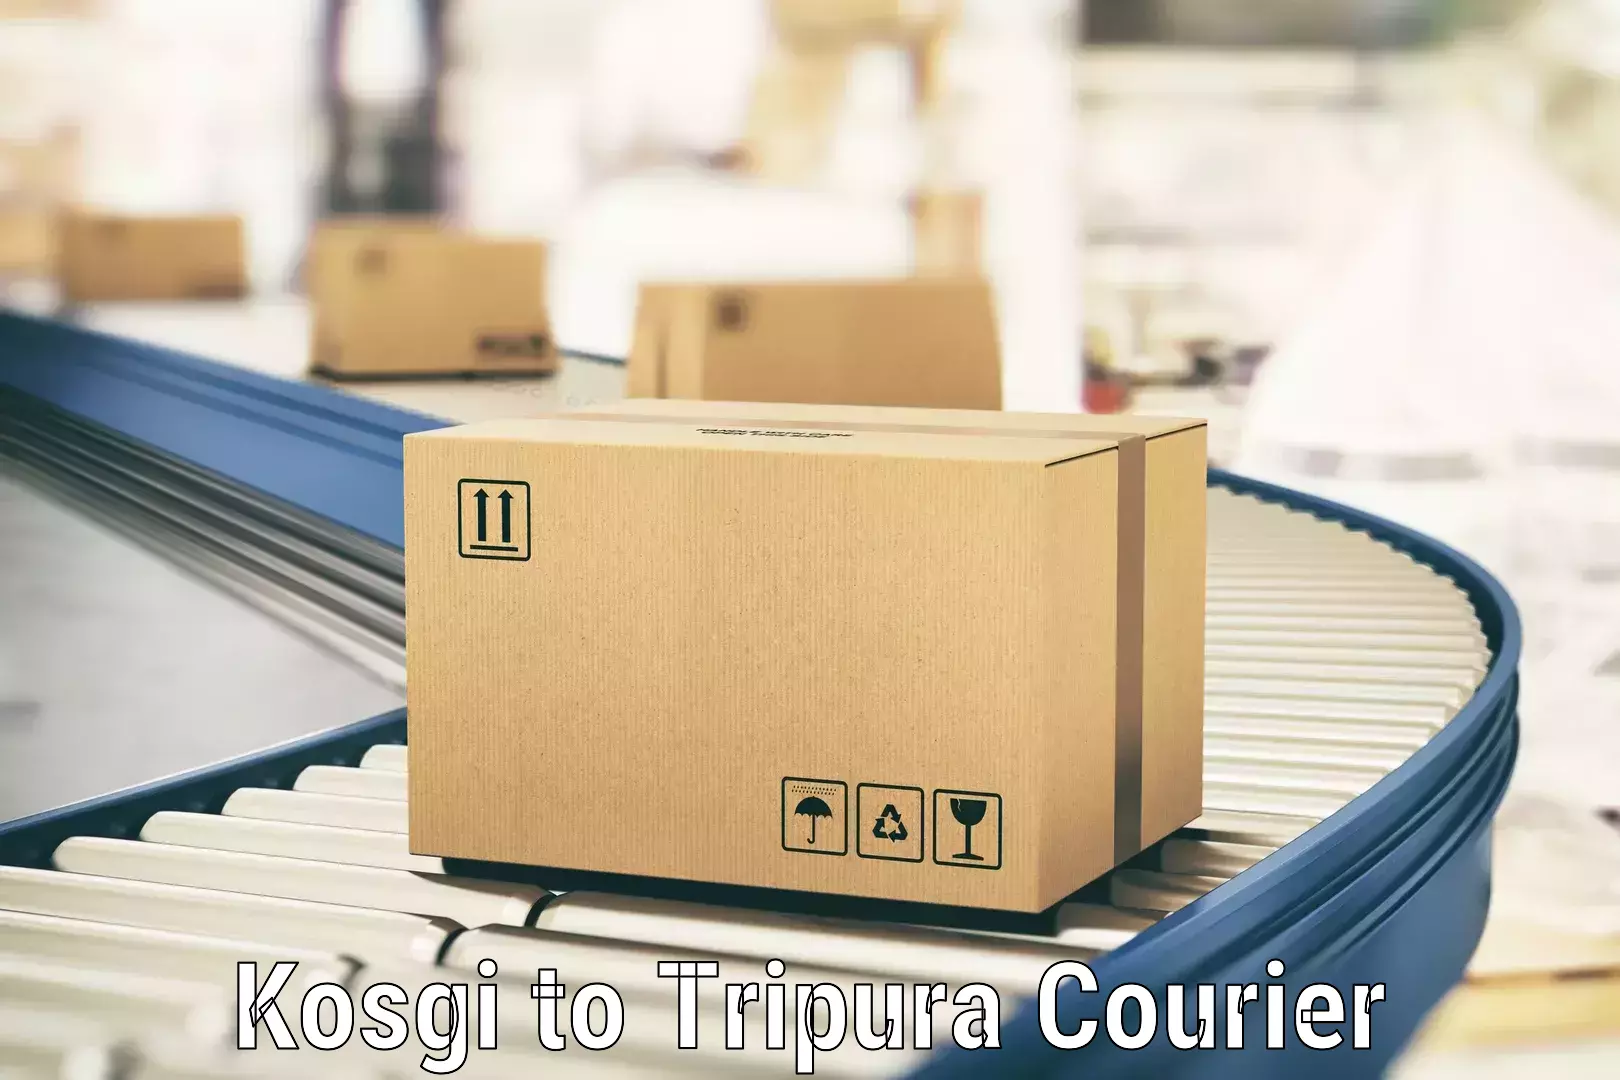 Door-to-door shipment in Kosgi to South Tripura